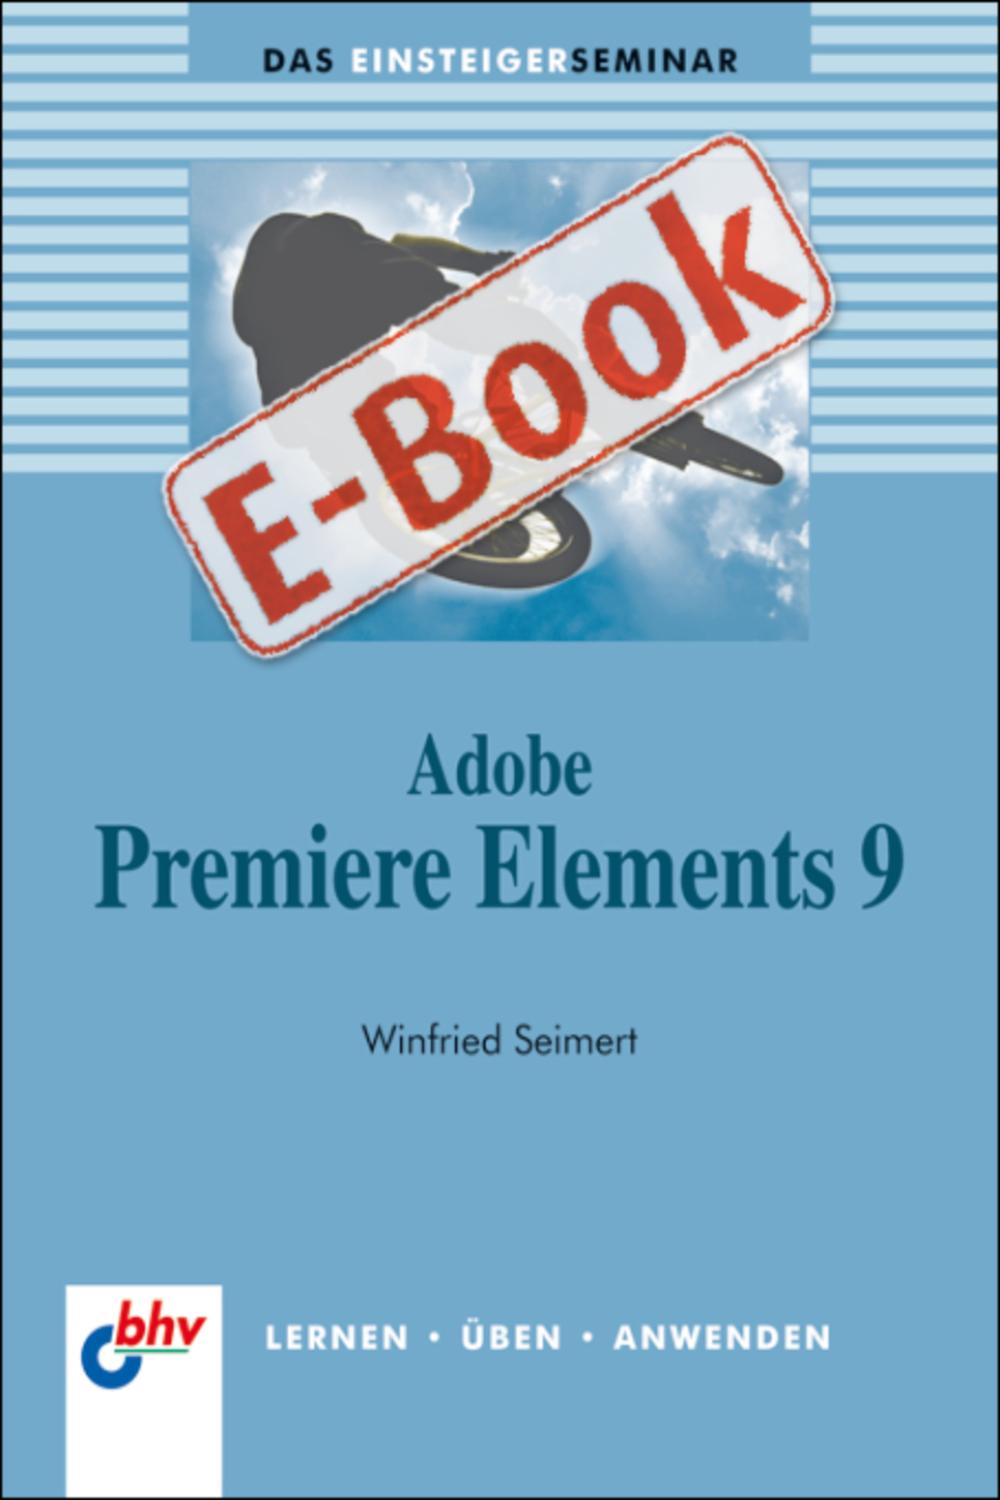 Adobe Premiere Elements 9 - Winfried Seimert